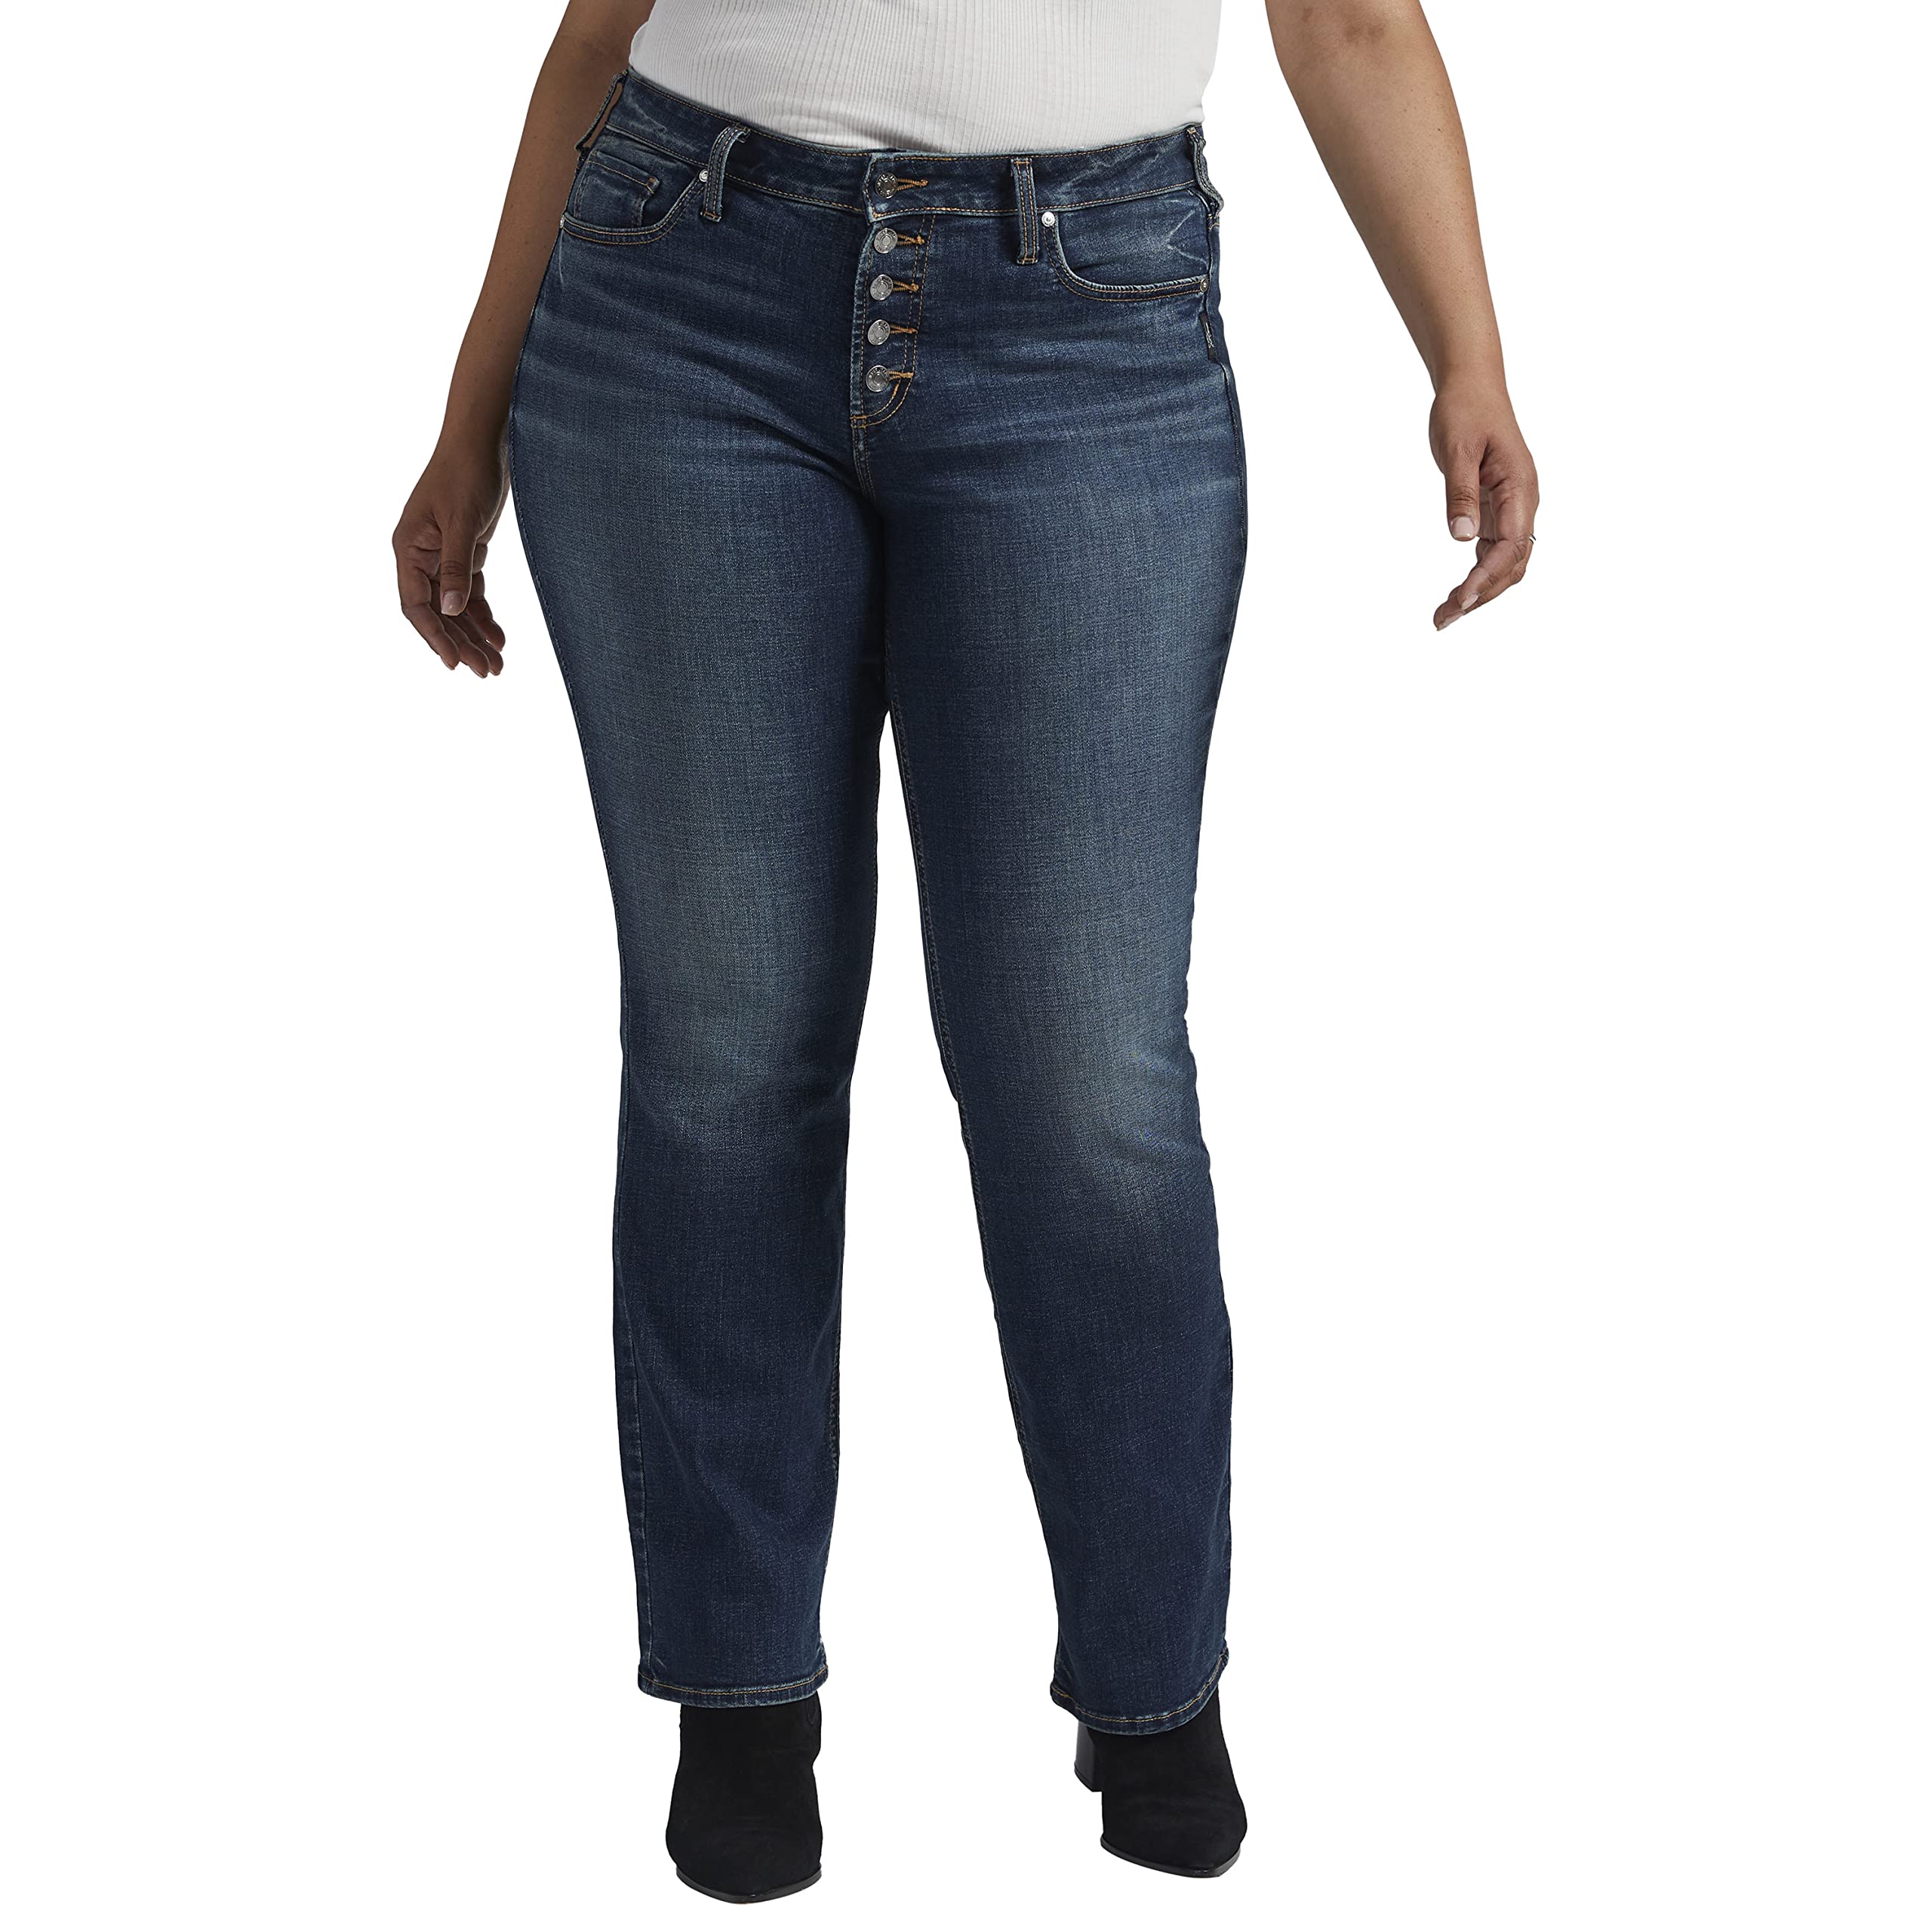 Узкие джинсы со средней посадкой Suki большого размера W93639ECF443 Silver Jeans Co.